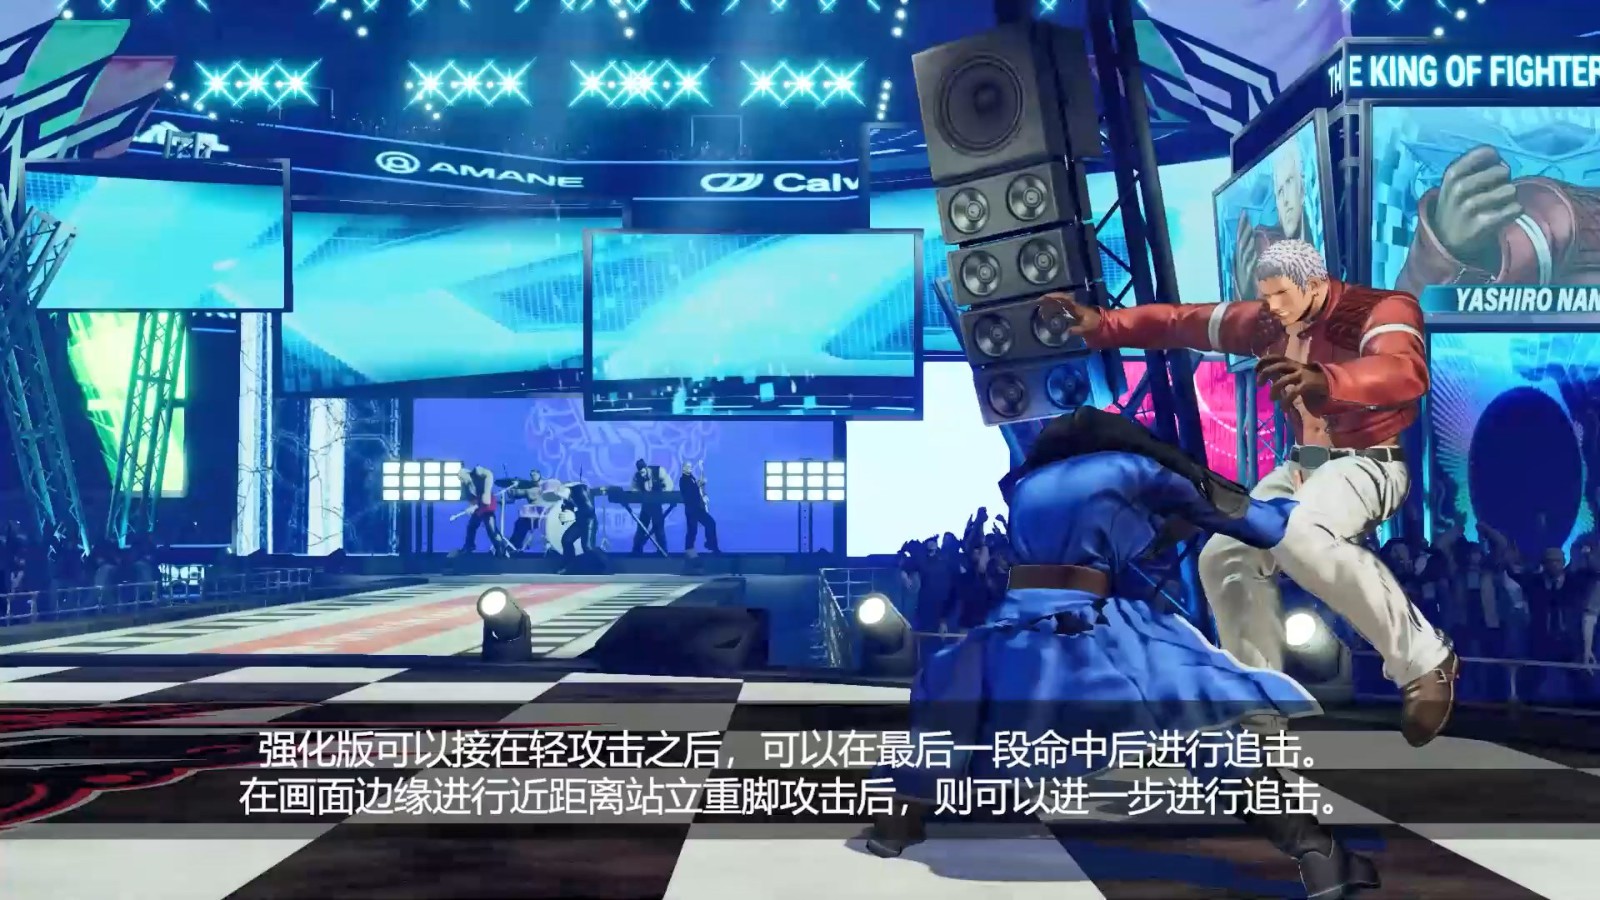 《拳皇15》DLC角色“高尼茨”介绍视频 6月20日上线